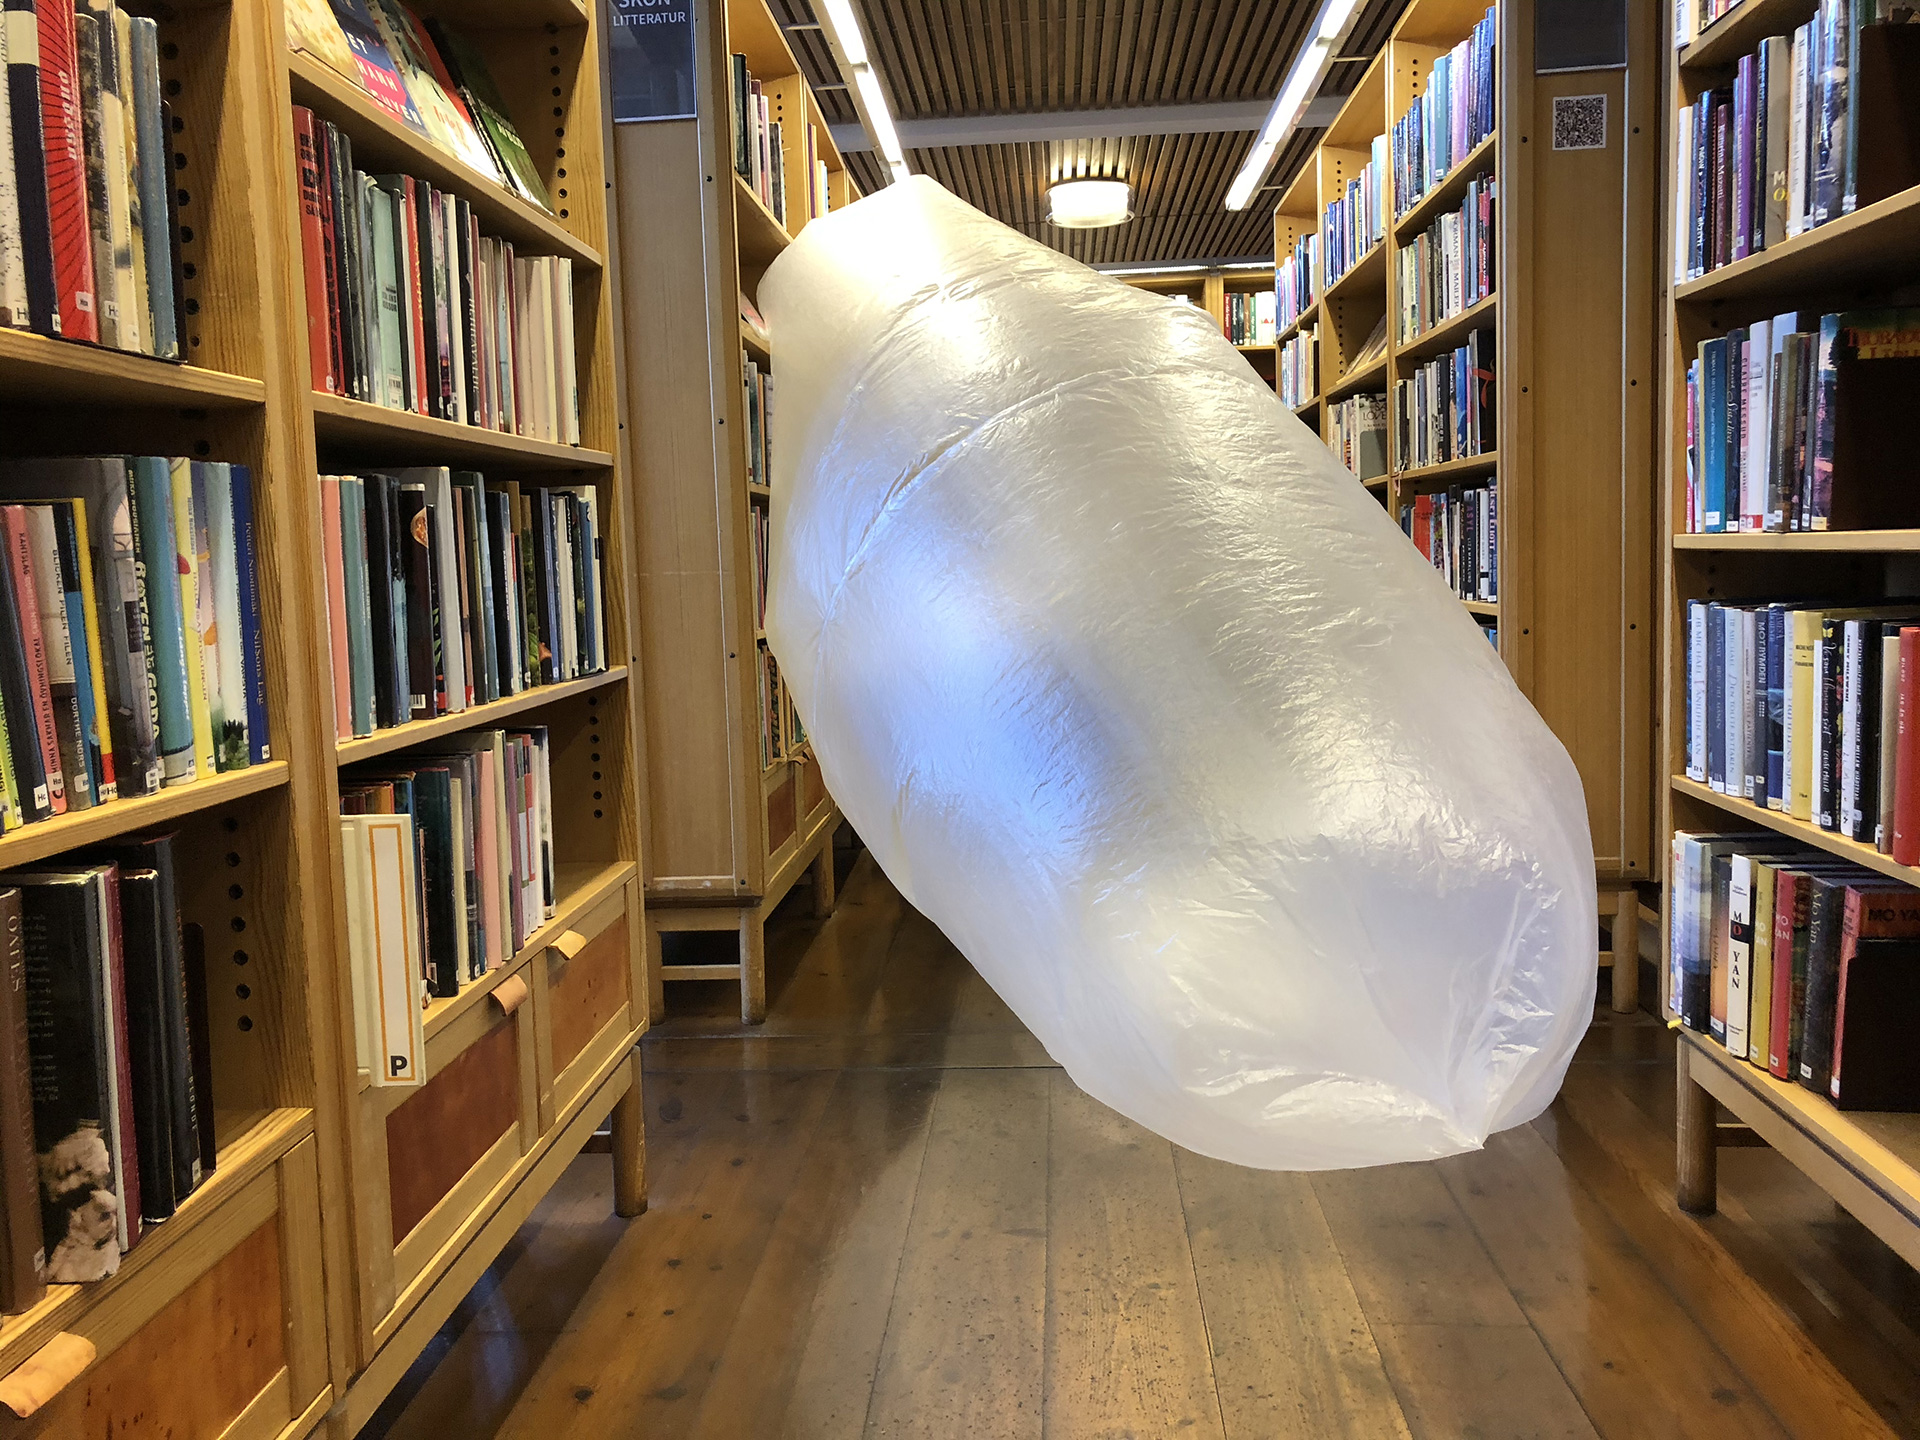 Jättestor vit ballong i Skövde stadsbibliotek. Nicole Neidert, Linnea Bågander och Joakim Envik Karlsson laborerar med "kostym i miljö" under residenset STM_IRL Spaces.